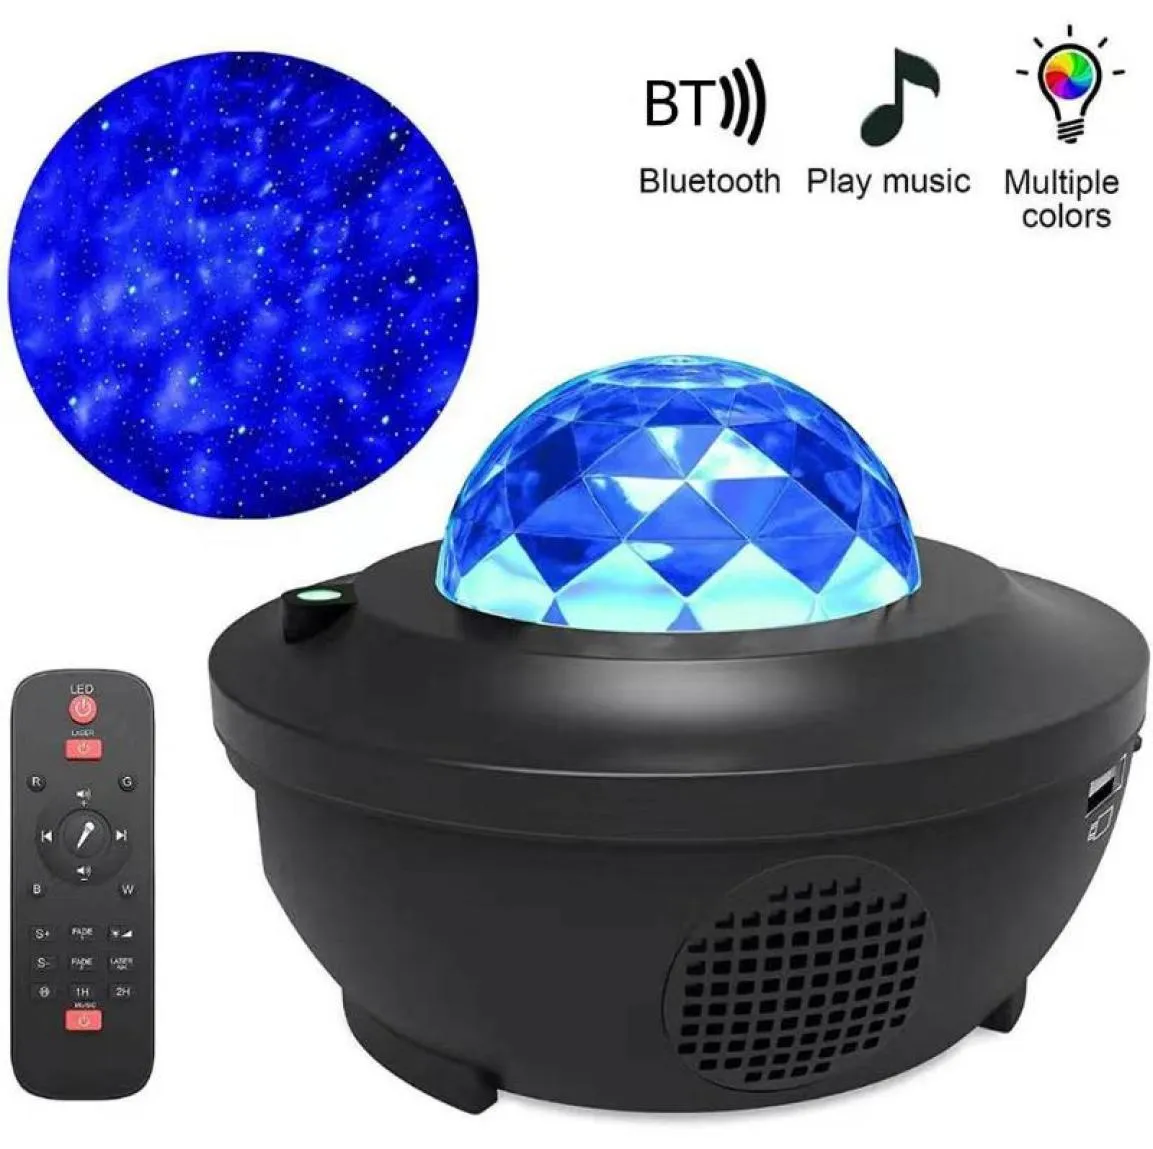 Färgglada stjärnhimmelprojektor Light Bluetooth USB Voice Control Music Player Talare Led Night Light Galaxy Star Projection Lamp B9579406